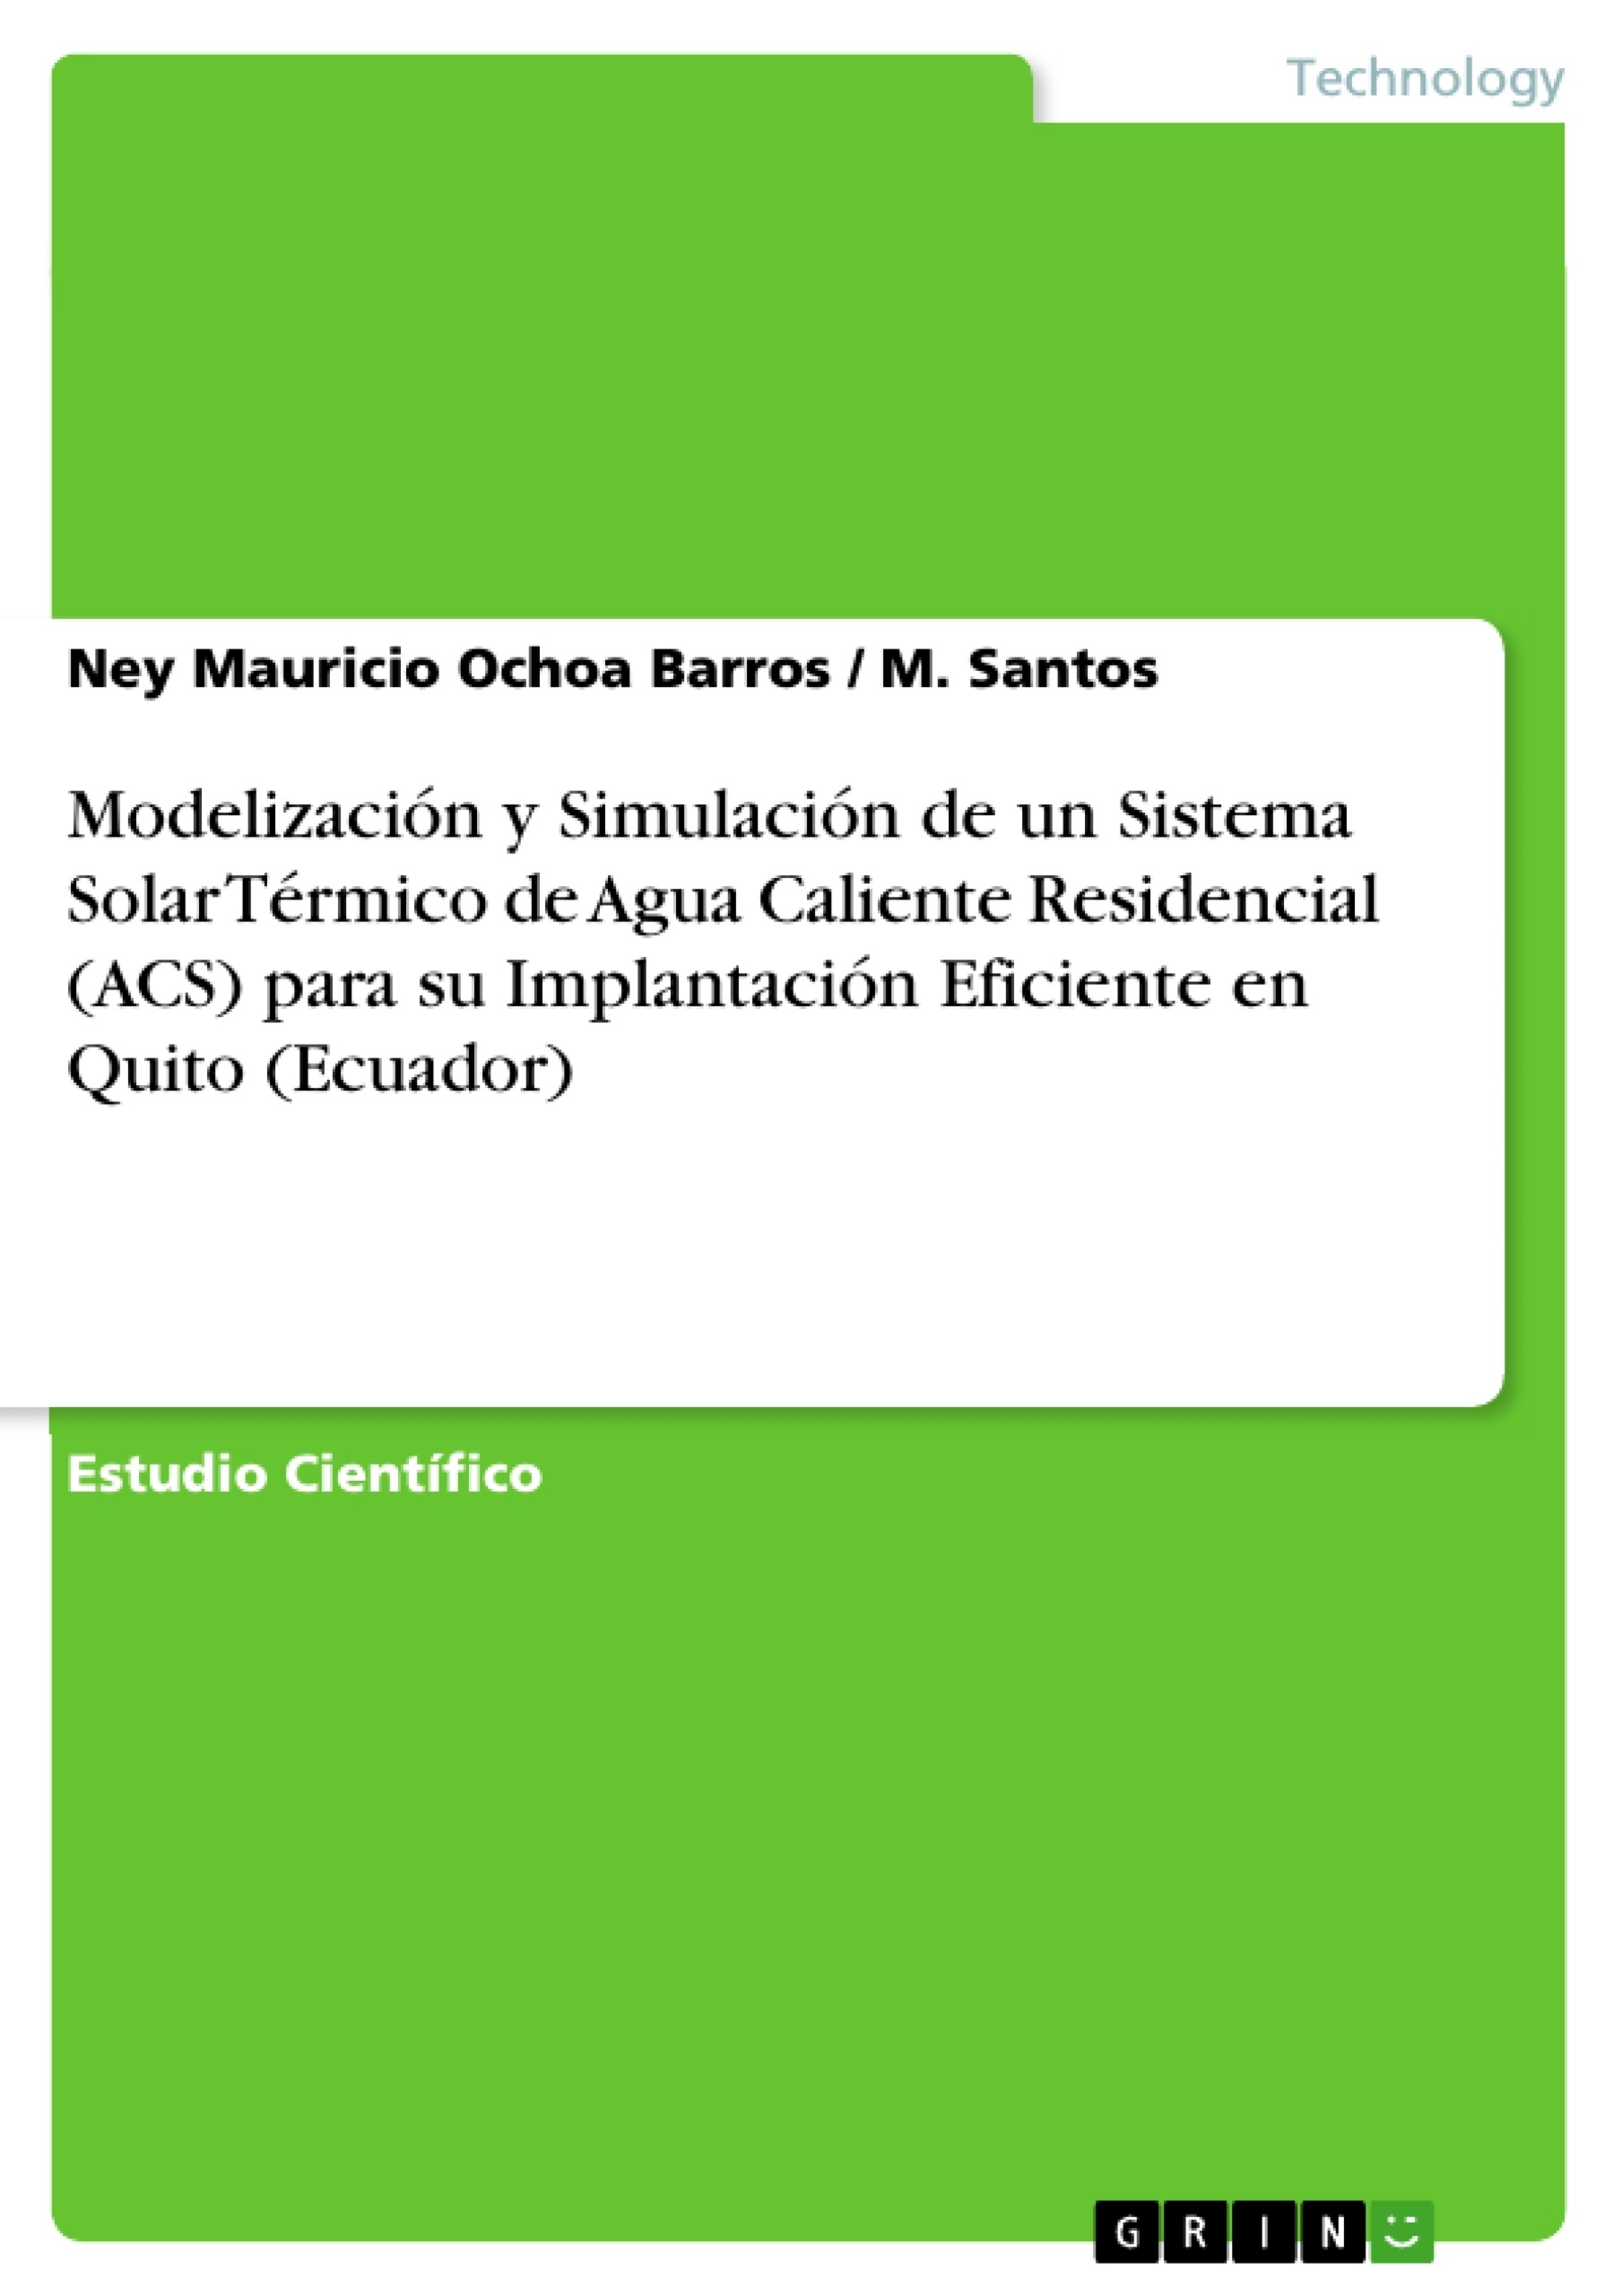 Título: Modelización y Simulación de un Sistema Solar Térmico de Agua Caliente Residencial (ACS) para su Implantación Eficiente en Quito (Ecuador)